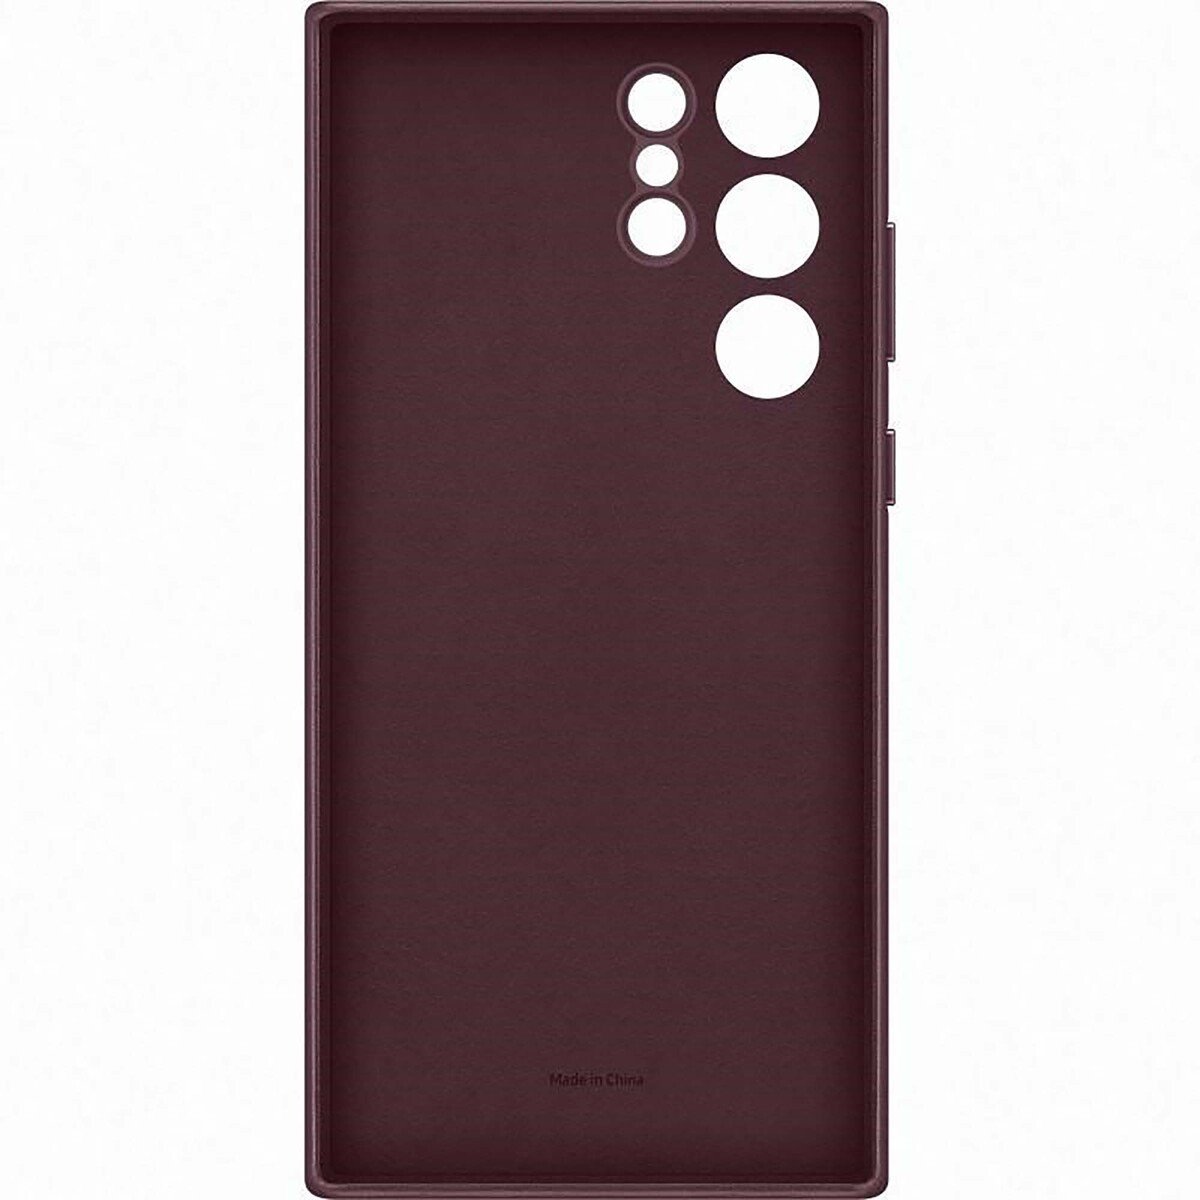 Samsung Galaxy S22 Ultra Leather Cover Case-Burgundy (EF-VS908LEEGWW)